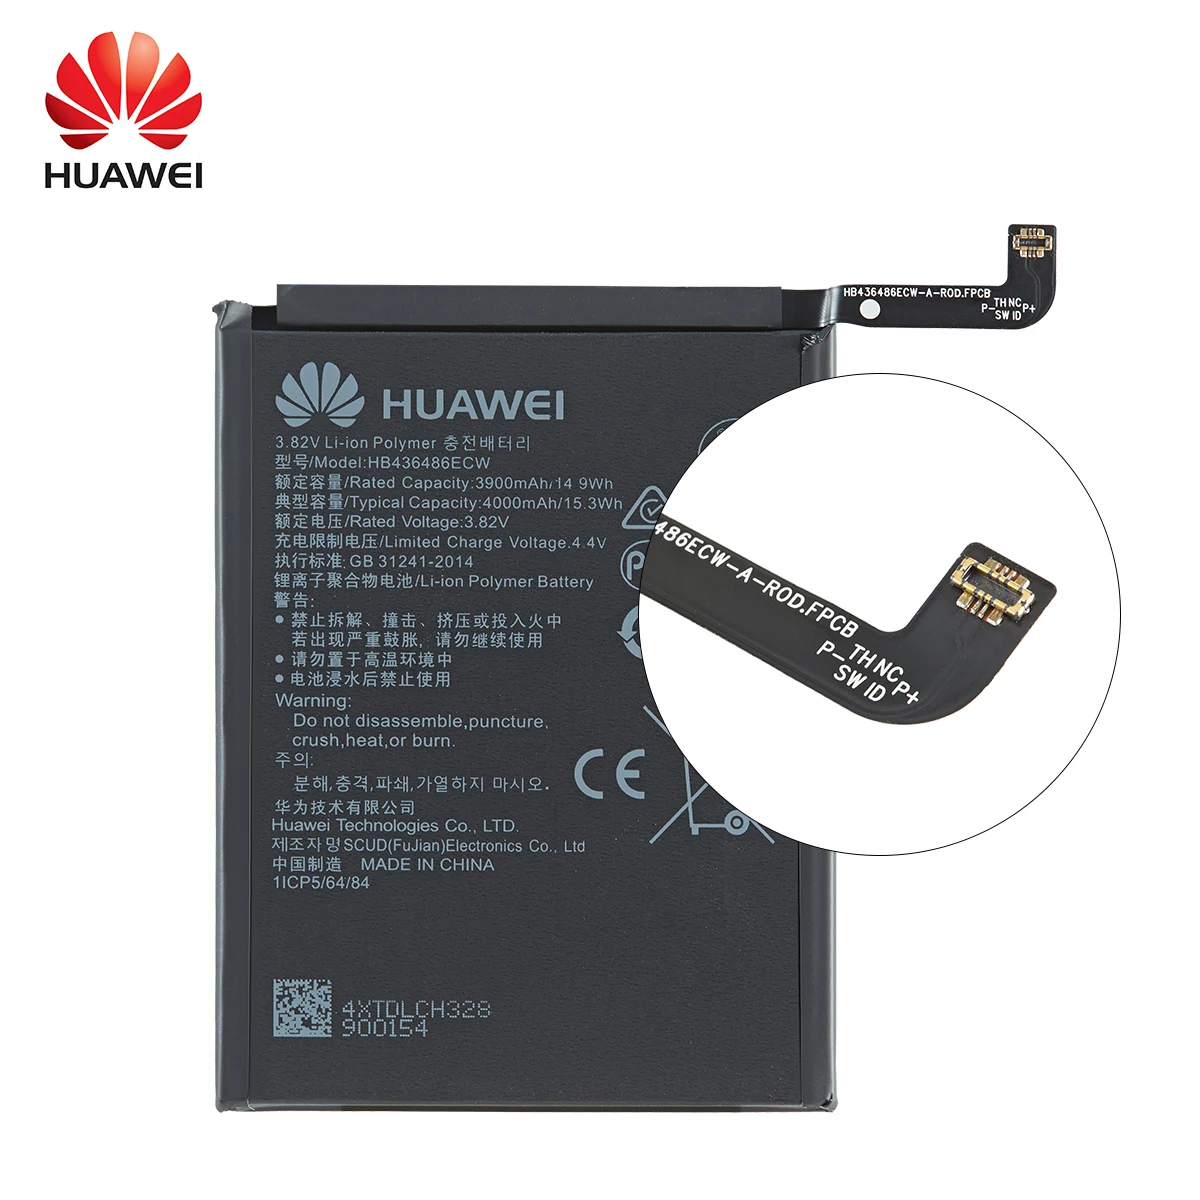 הואה-ווי 100% Orginal HB436486ECW 4000 מיליאמפר סוללה עבור Huawei Mate 10 חבר 10 Pro /P20 Pro AL00 L09 L29 TL00 החלפת הסוללות - 2